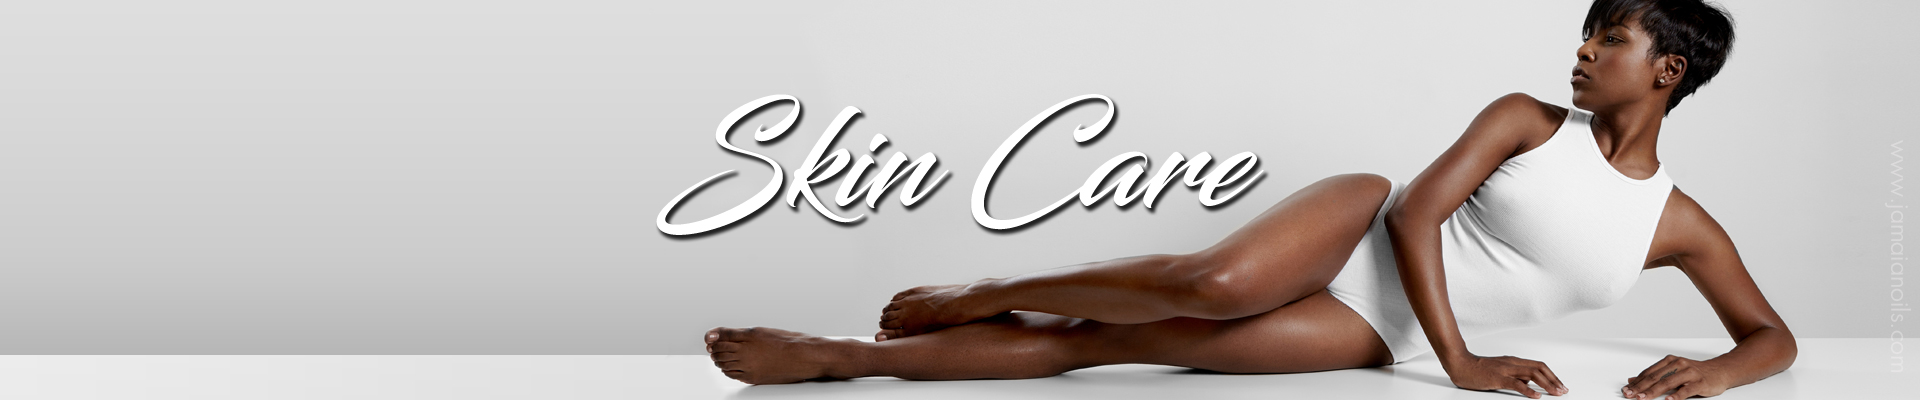 skin-care-category-banner-jamaicanoils.jpg